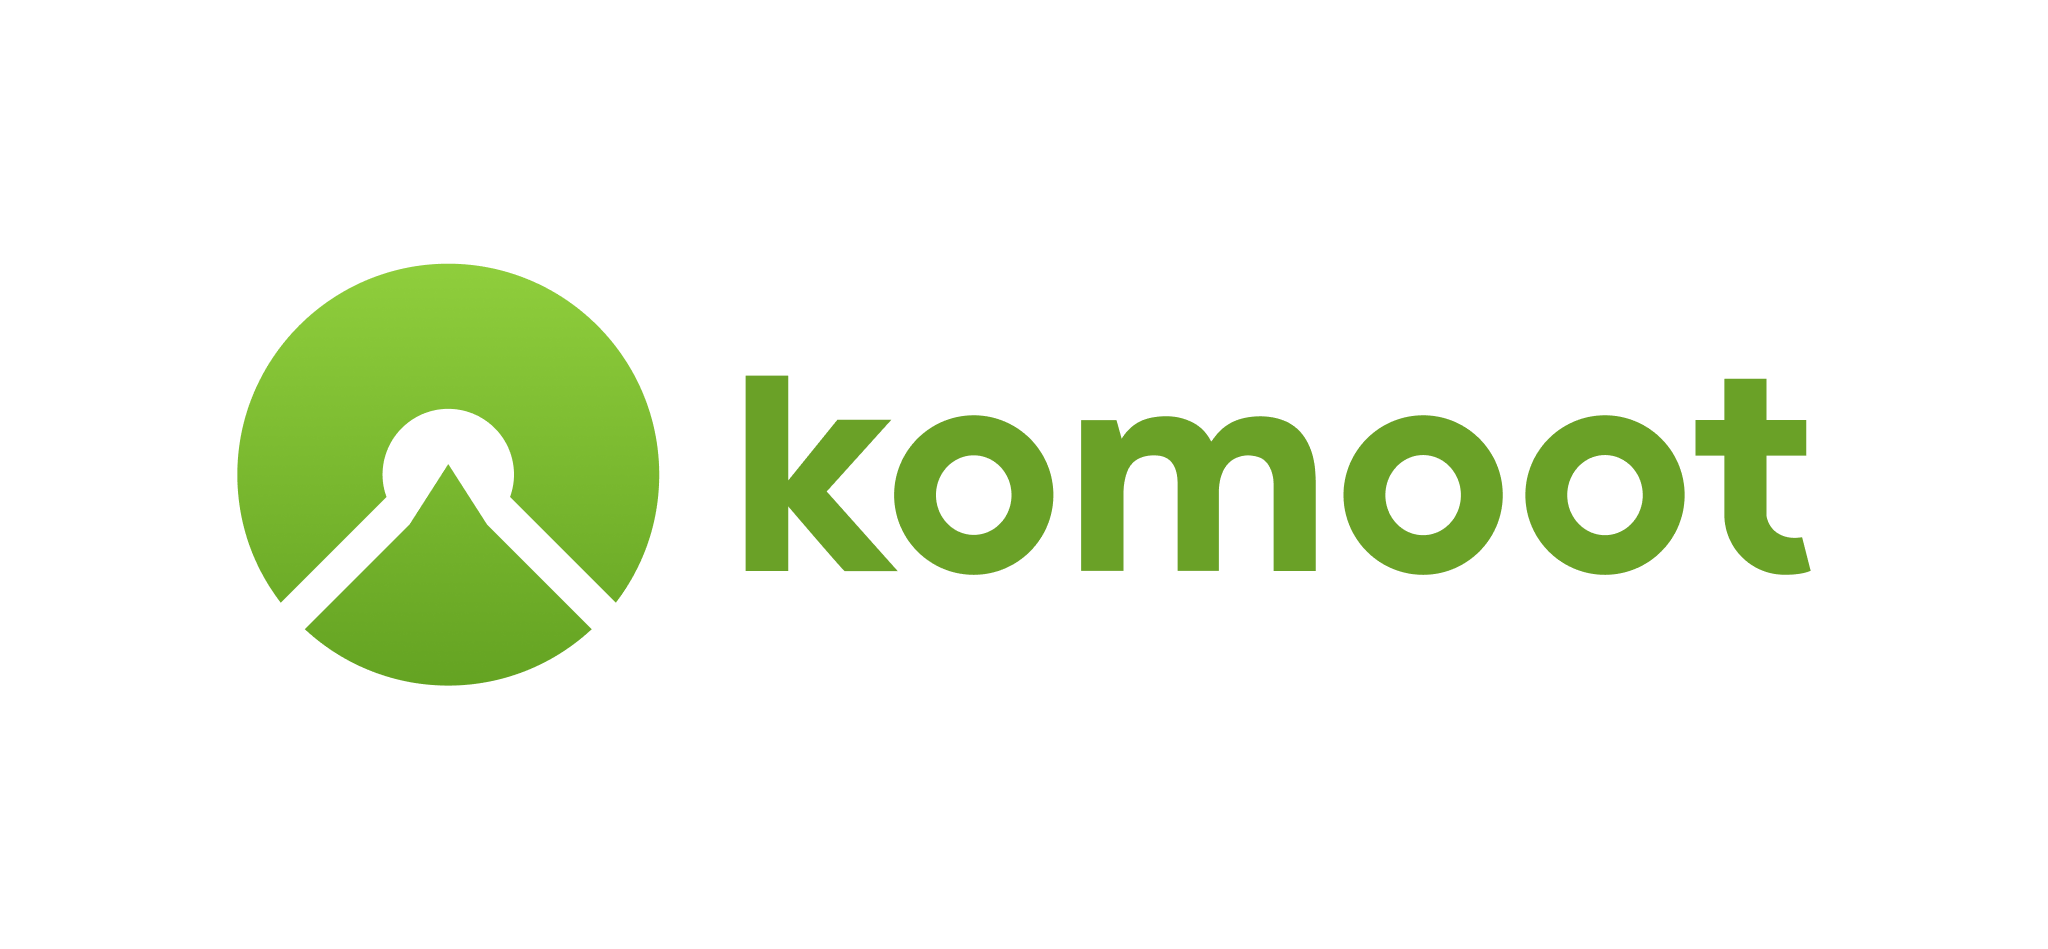 358913-logo-komoot-2-green---RGB--v2-1--74a410-original-1594397399.png